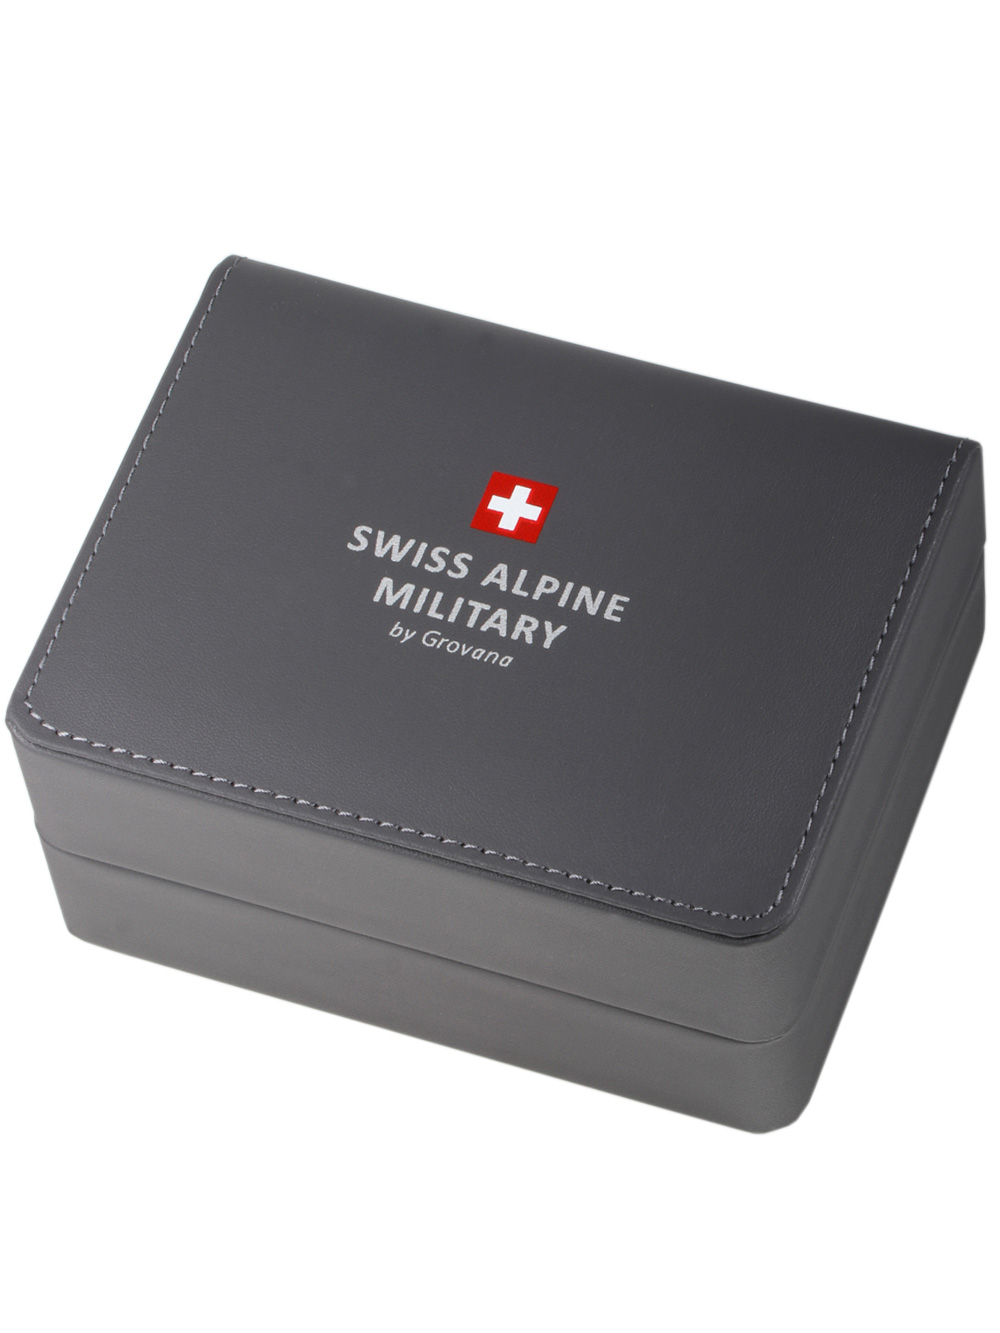 Zegarek męski Swiss Alpine Military 7095.2177